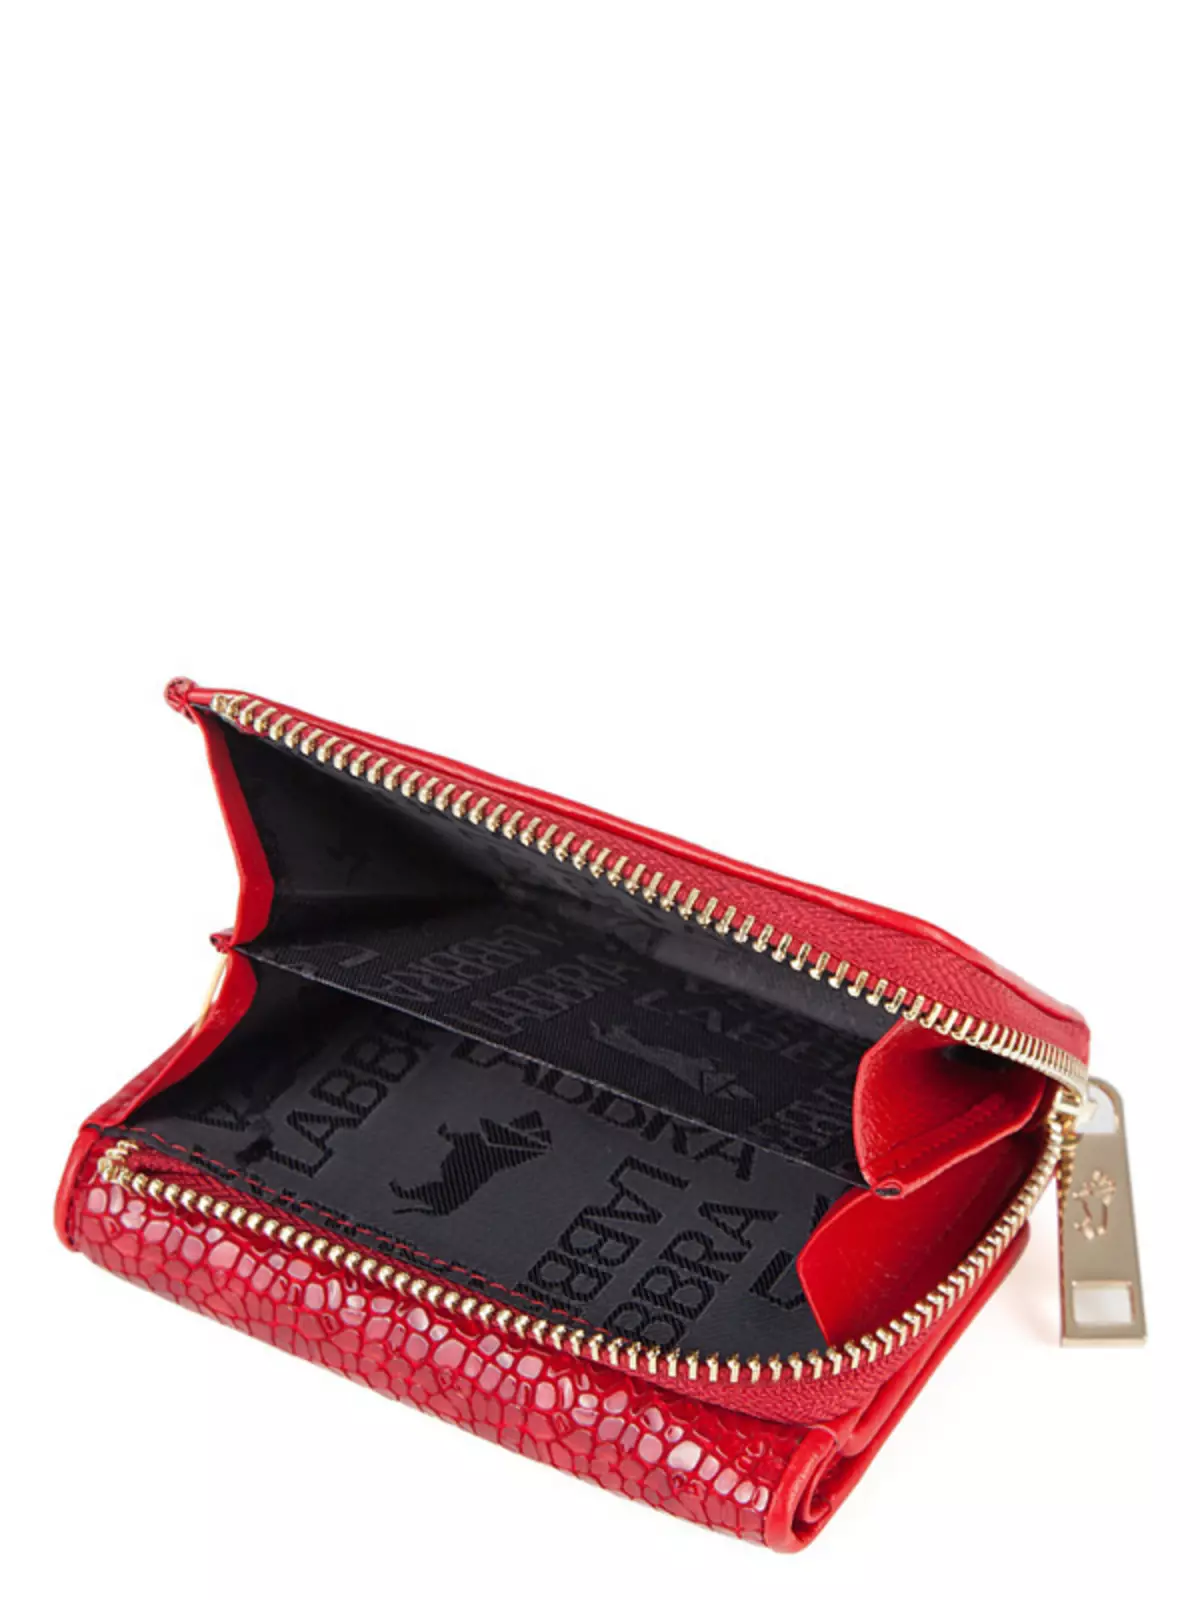 Червоні гаманці (65 фото): жіночі шкіряні портмоне червоного кольору 15161_30